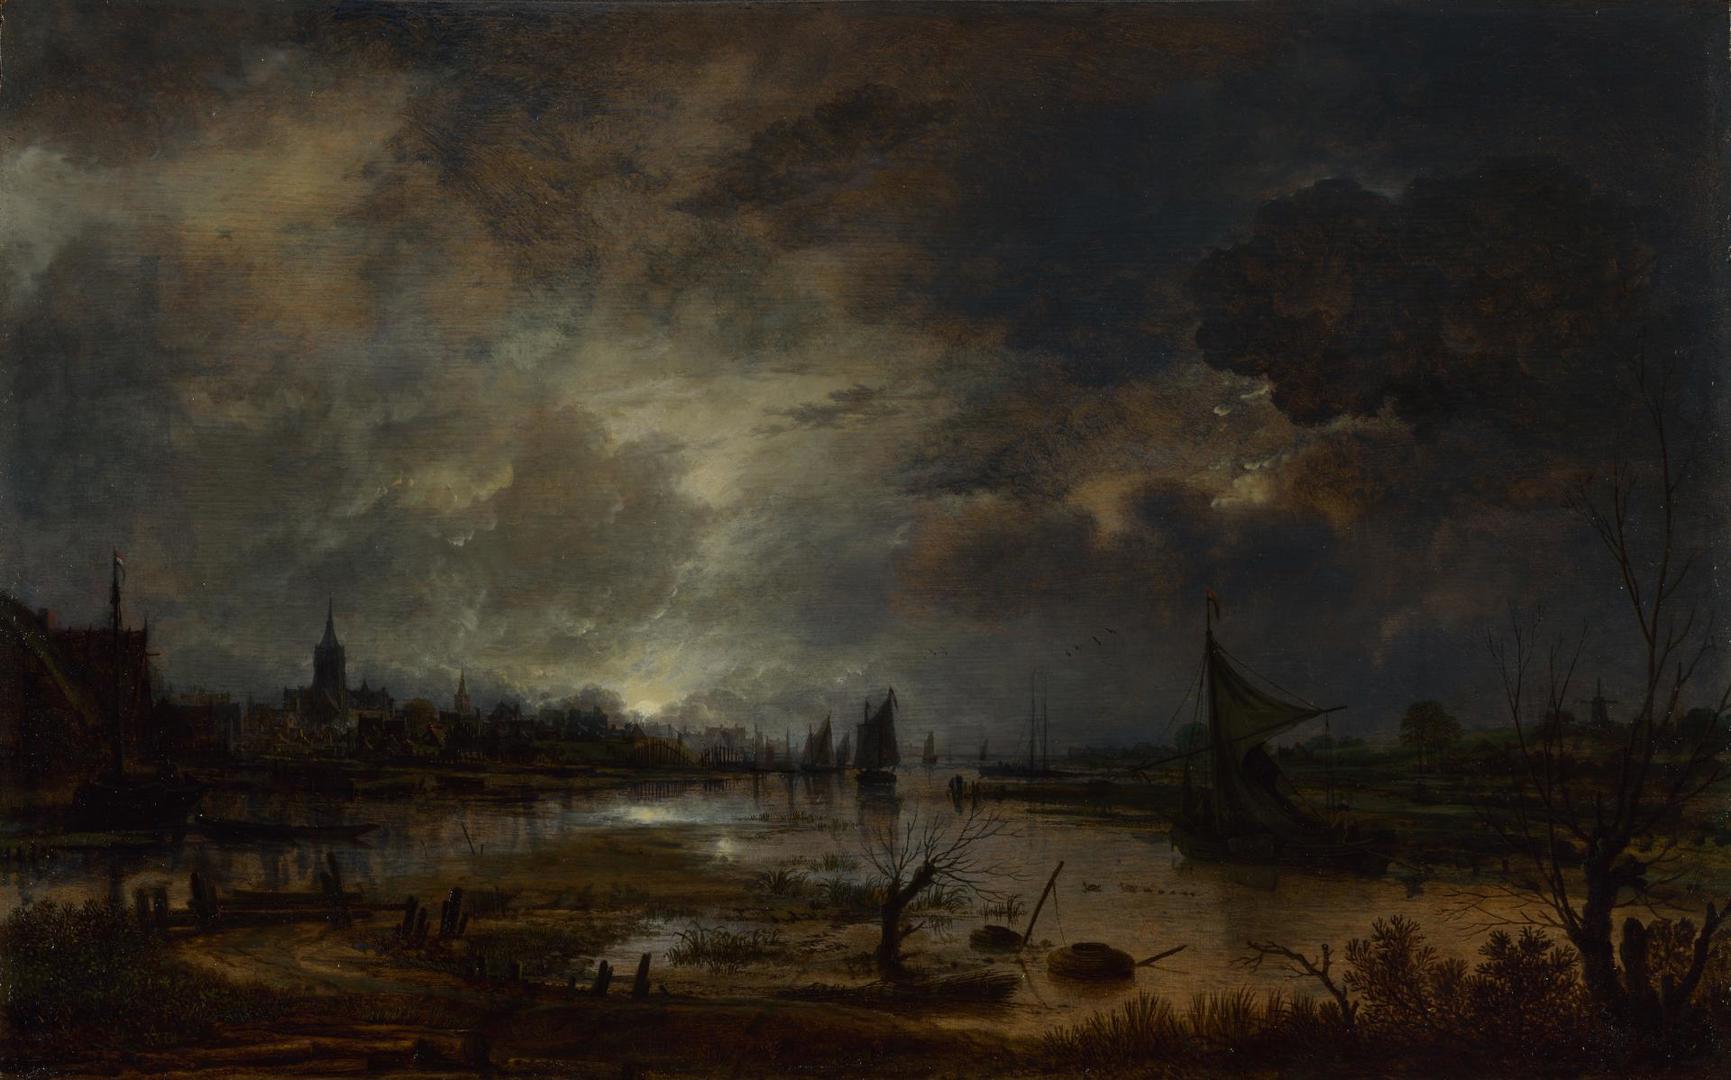 A River near a Town, by Moonlight by Aert van der Neer